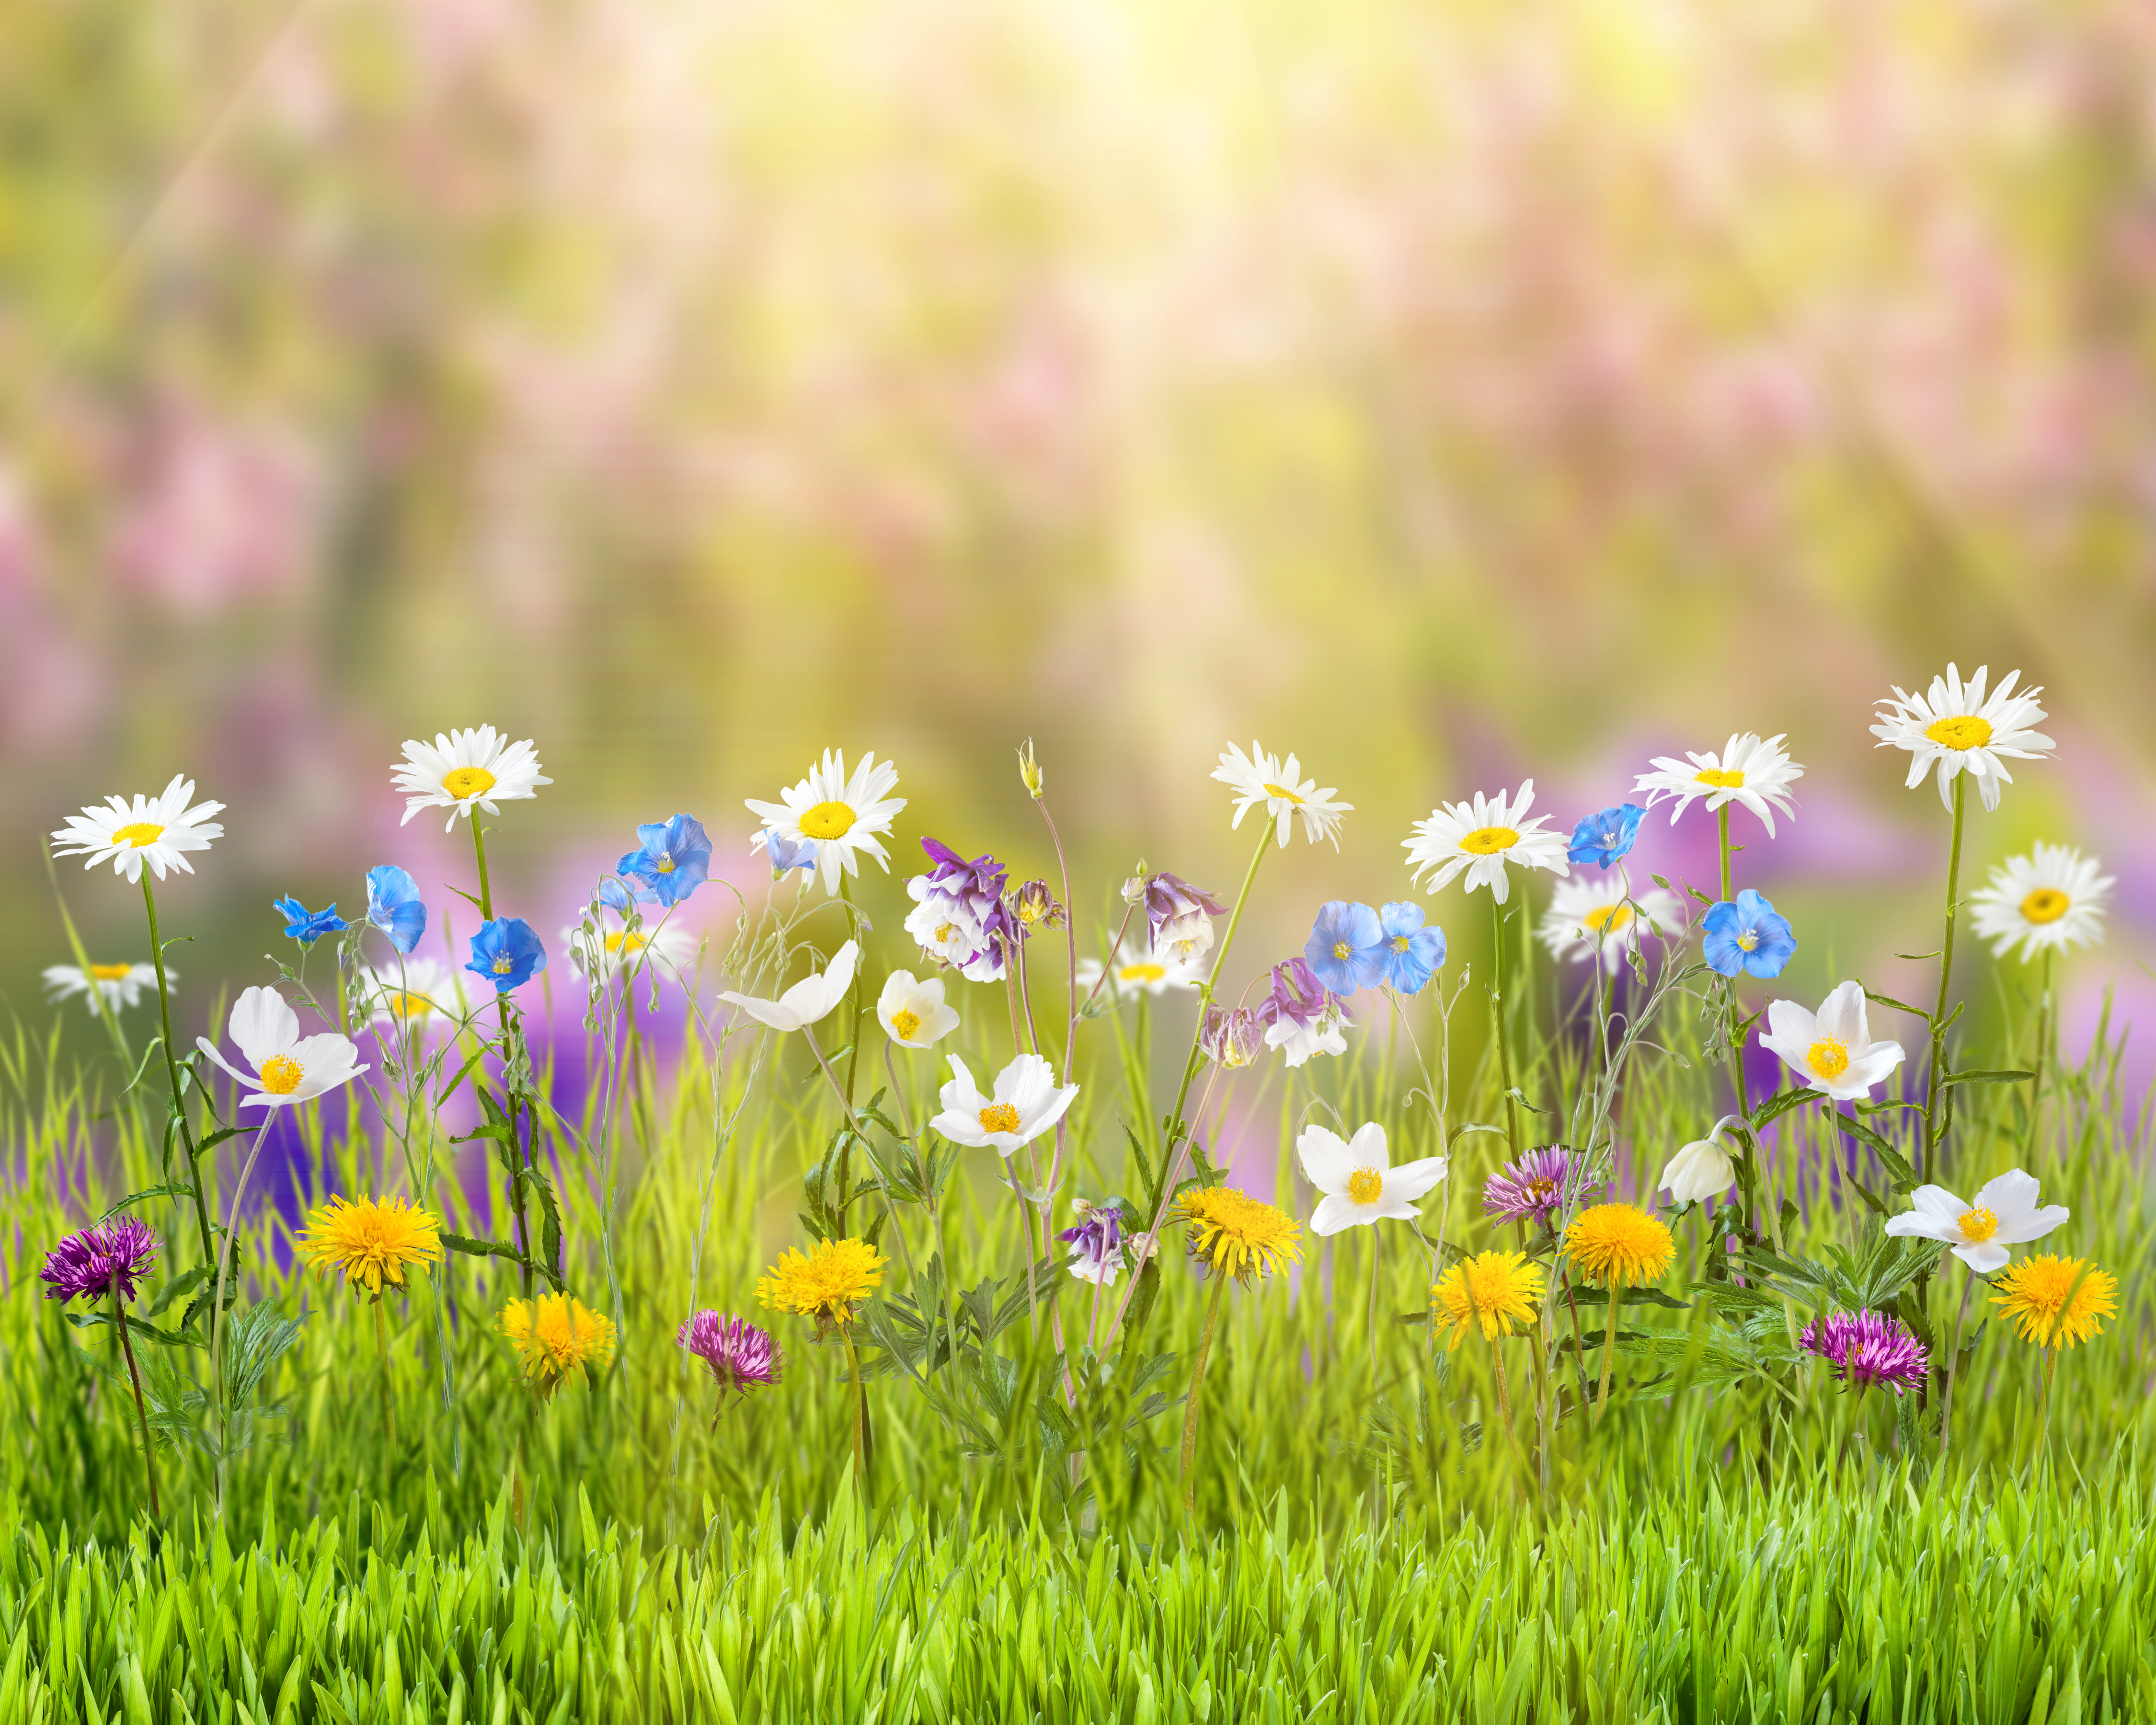 761811 скачать обои весна, белый цветок, желтый цветок, природа, трава, солнечно, земля/природа, цветок - заставки и картинки бесплатно